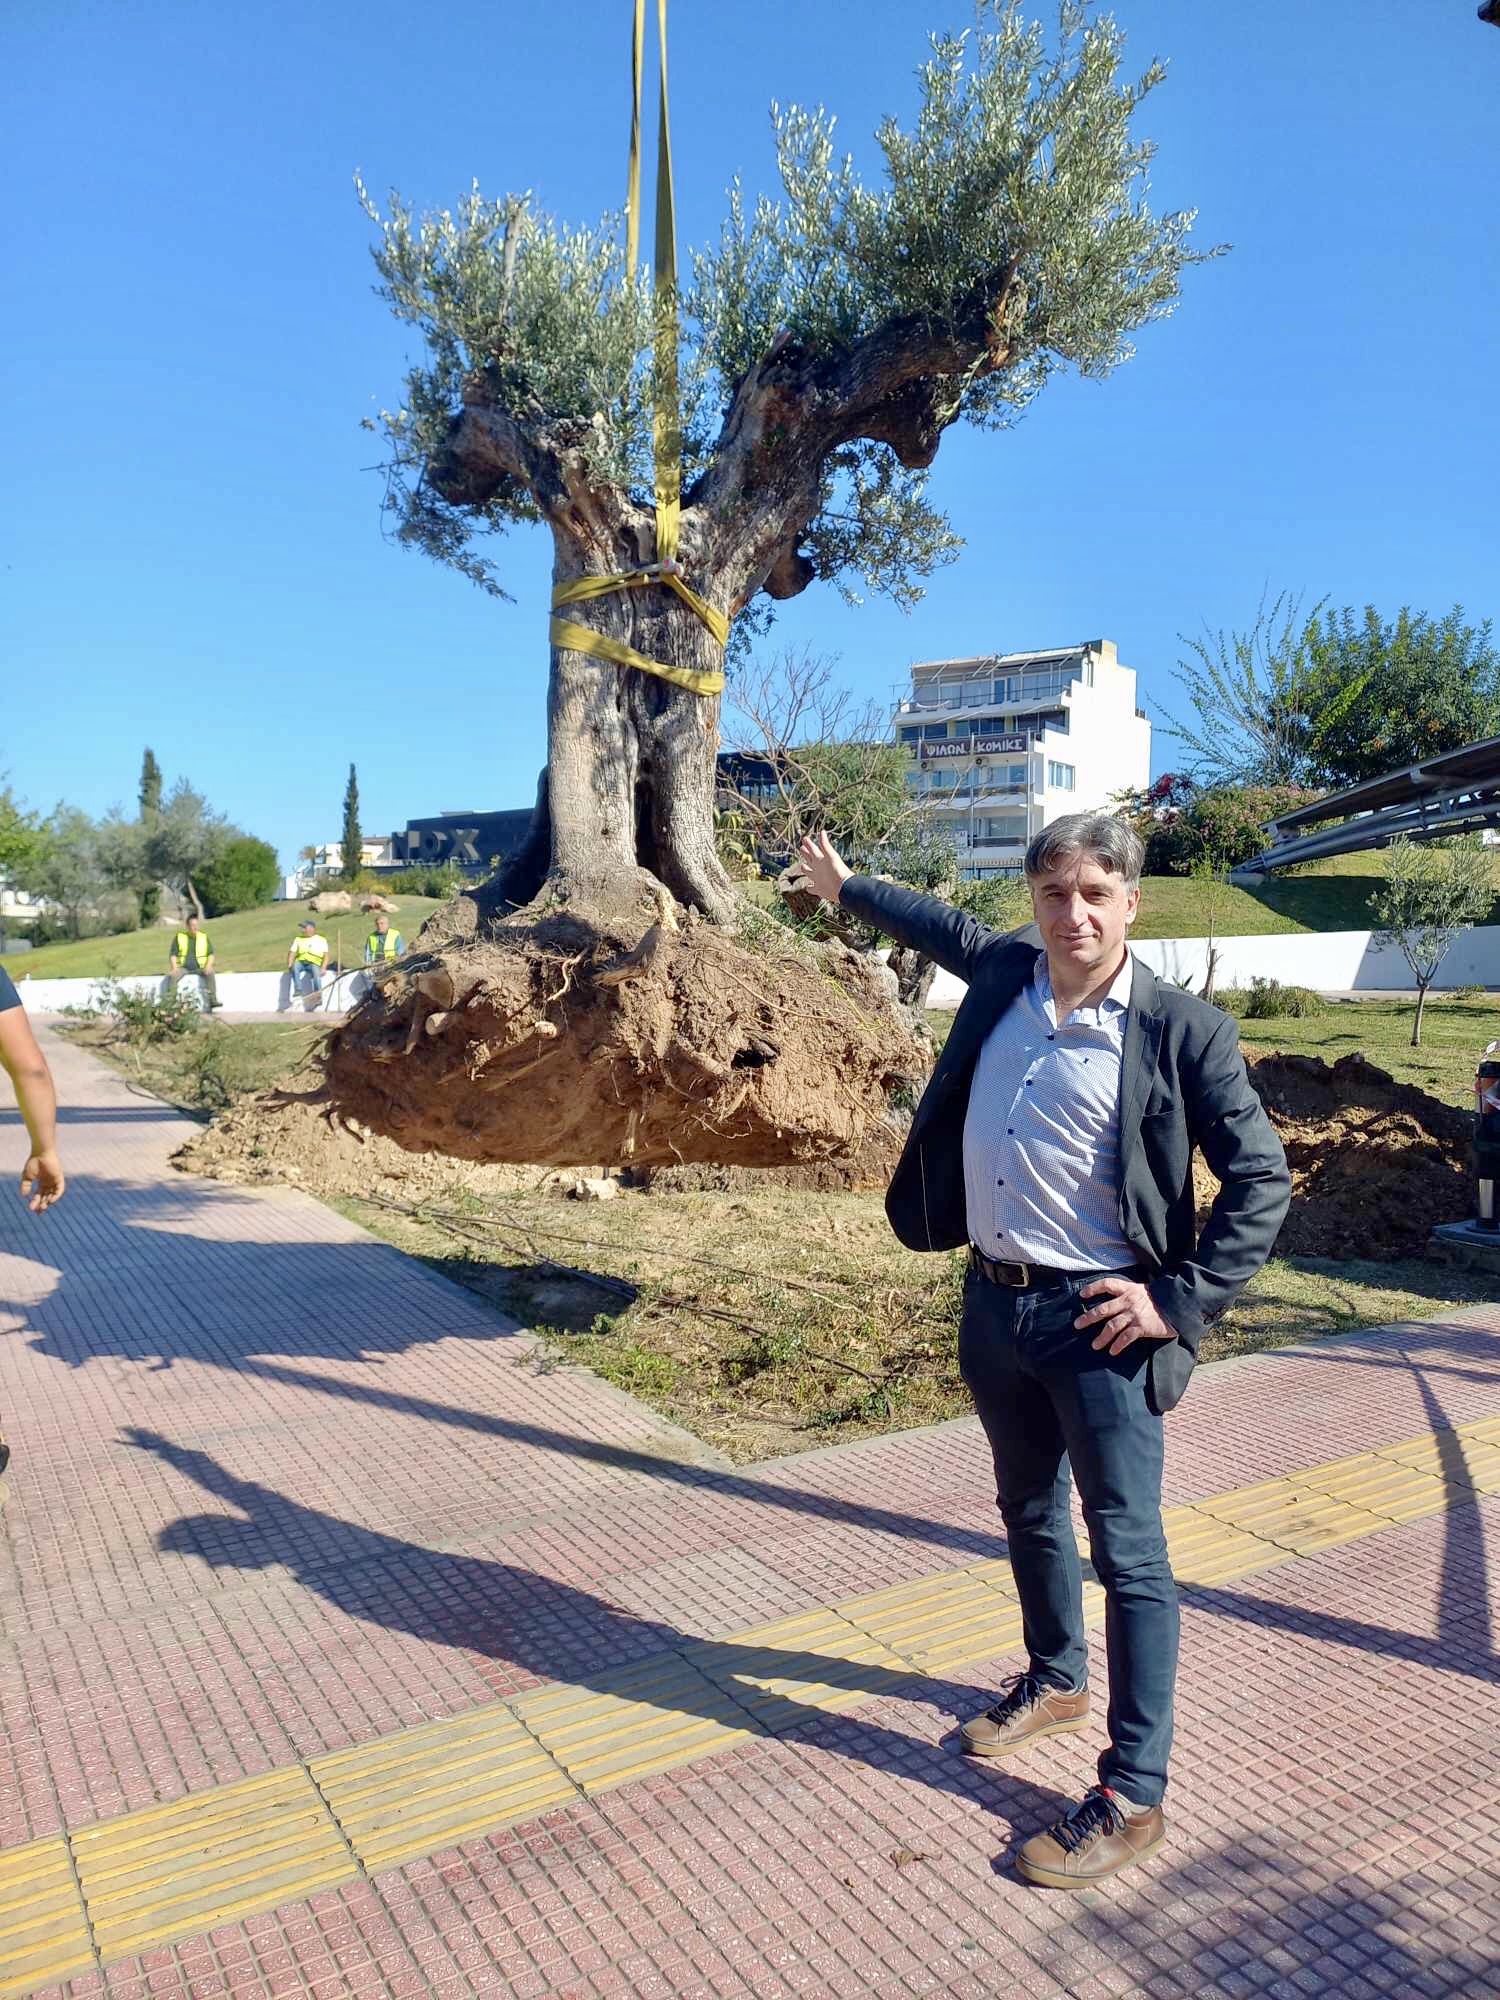 δήμος αθηναίων: υπεραιωνόβια ελαιόδεντρα στο κέντρο της πόλης – δείτε φωτογραφίες